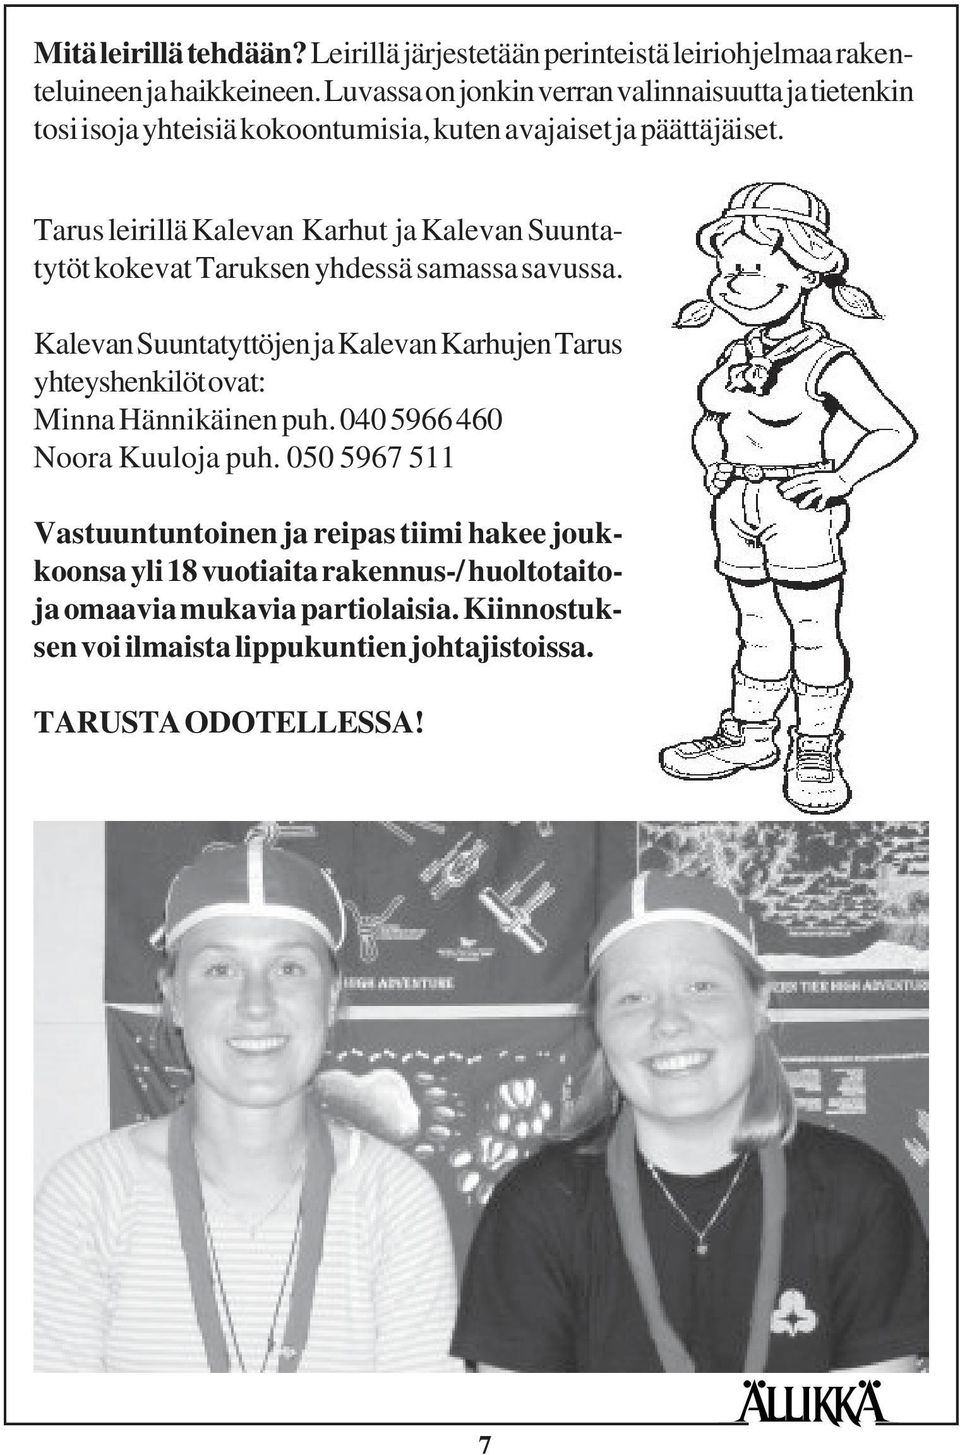 Tarus leirillä Kalevan Karhut ja Kalevan Suuntatytöt kokevat Taruksen yhdessä samassa savussa.